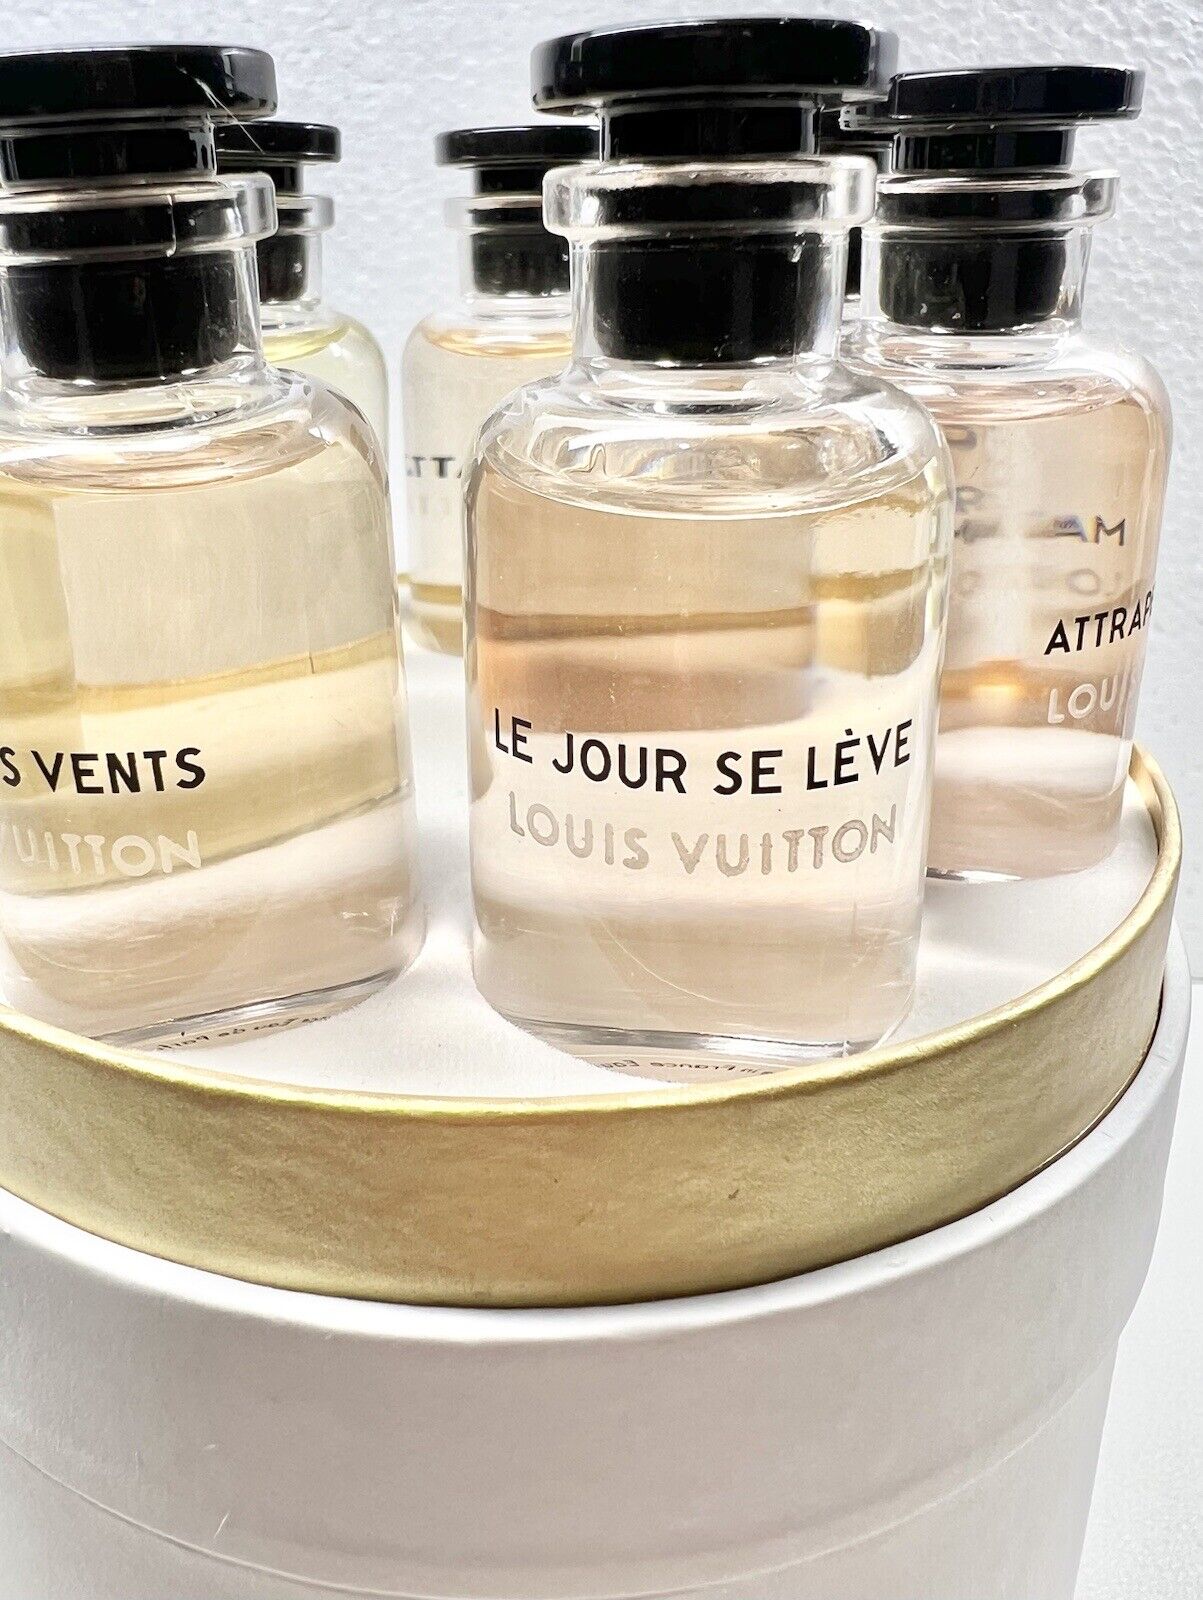 Louis Vuitton 7 Pcs Perfume 10ml Miniature Set - AUTHENTIC - NWB 🎁